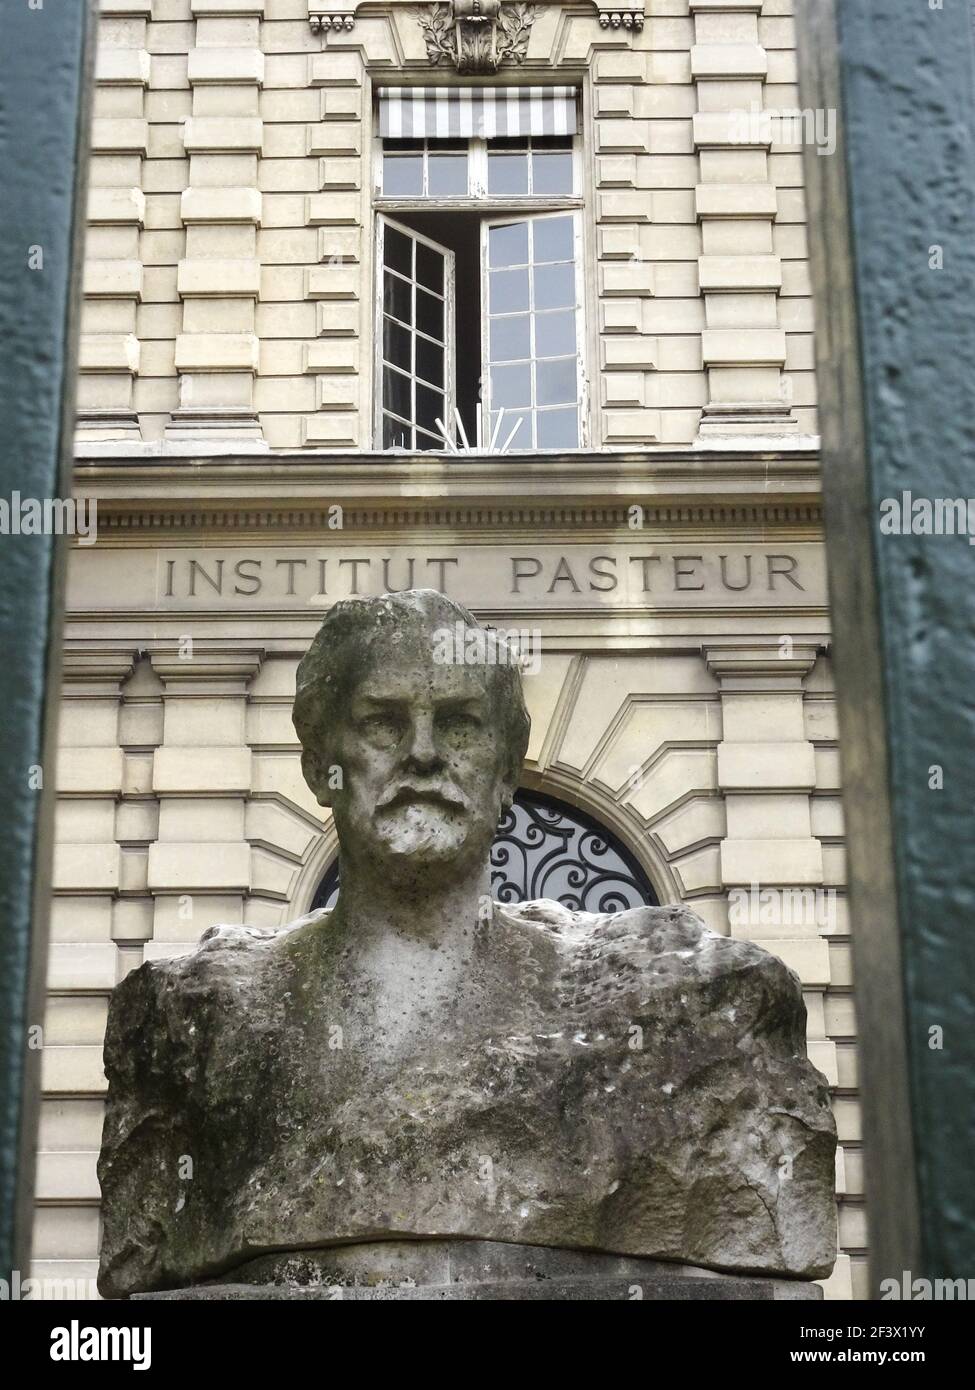 Paris (France): Pasteur Institute, building facade and bust of Louis Pasteur Stock Photo